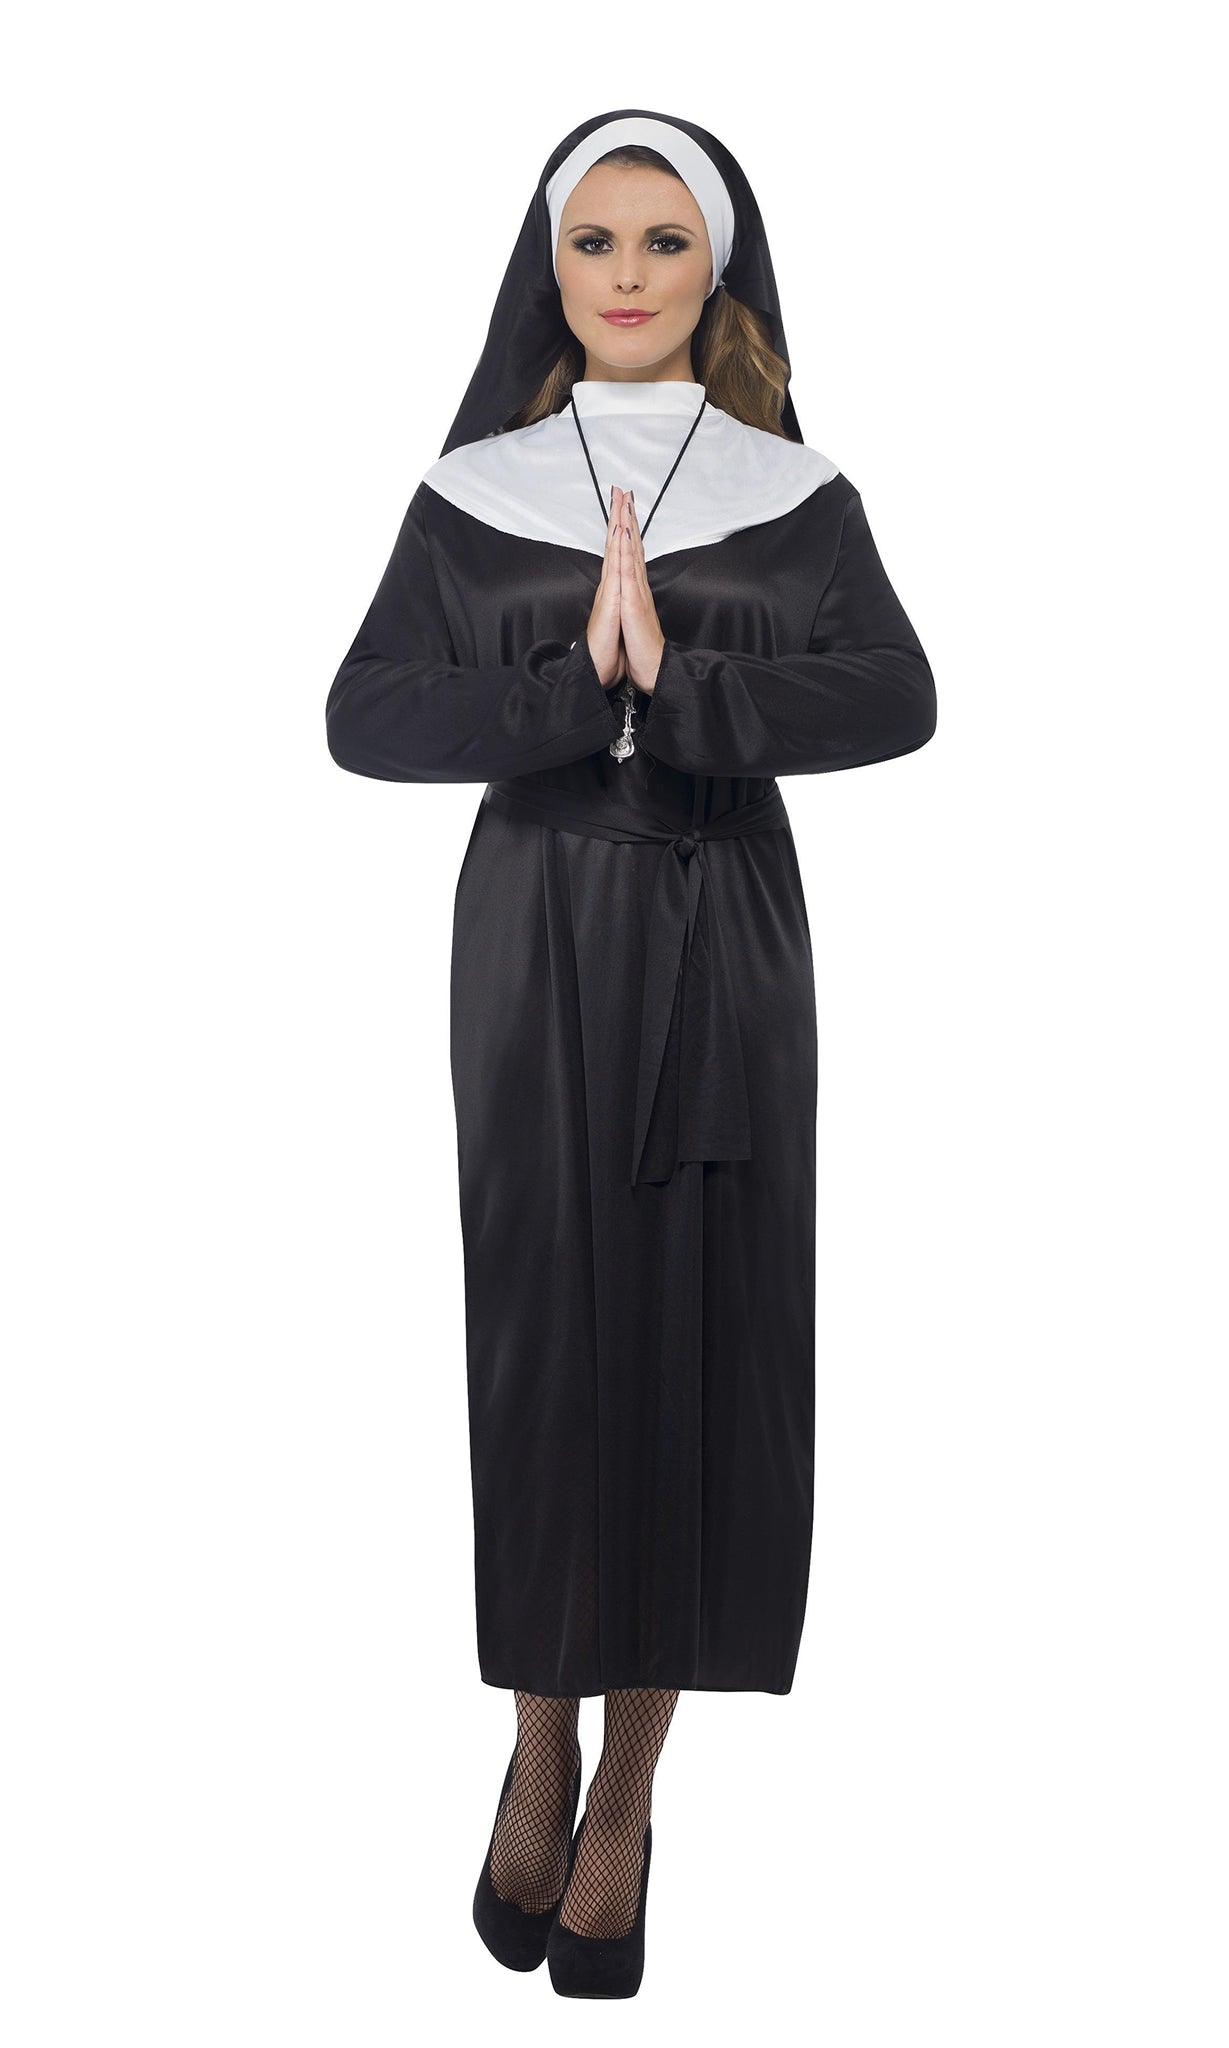 Buy Nun For You